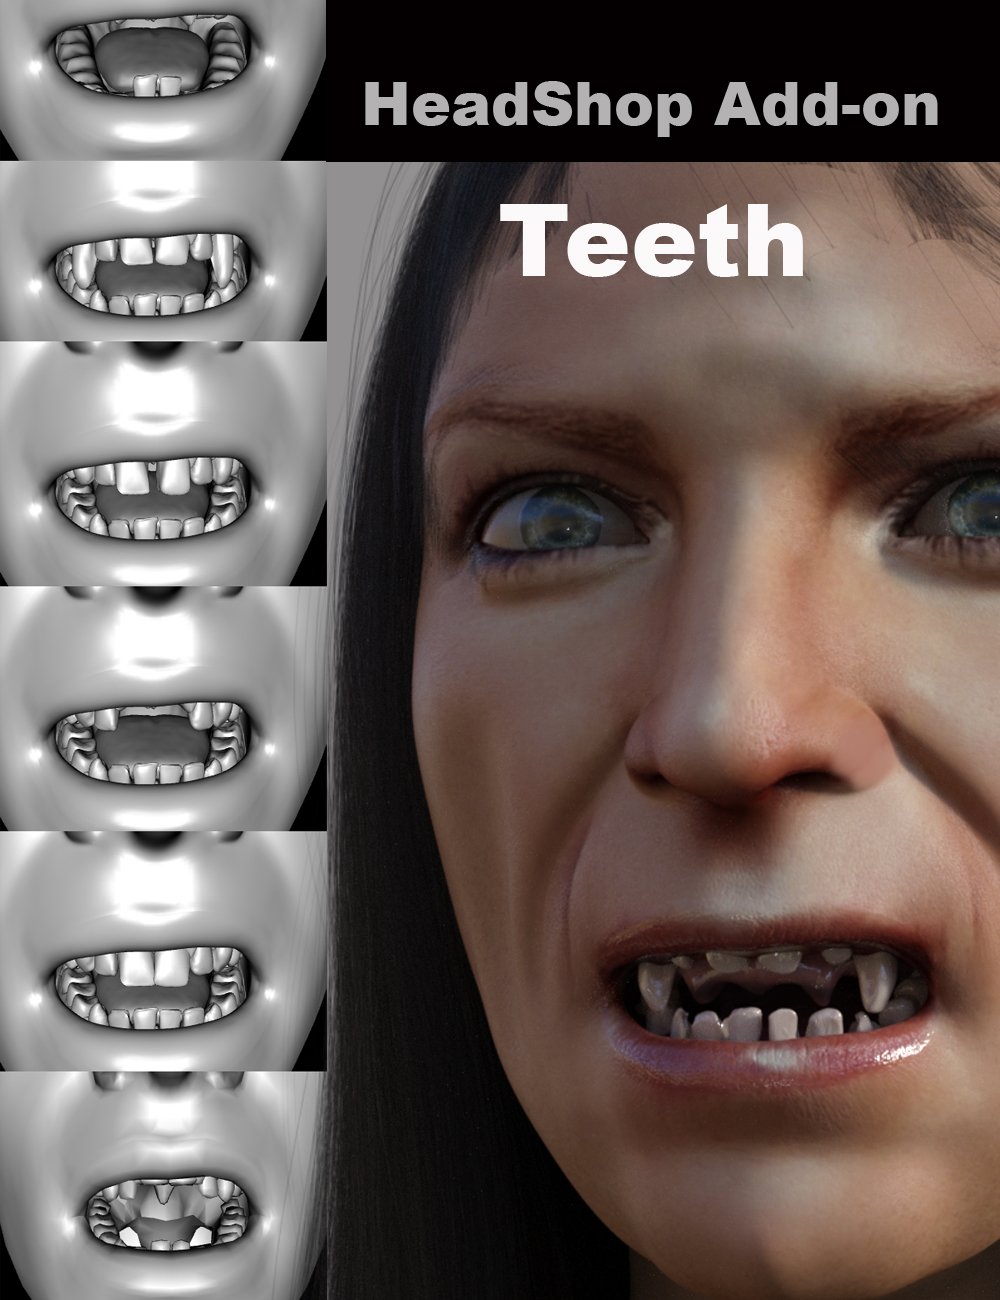 HeadShop - Teeth Add-On by: Abalone LLC, 3D Models by Daz 3D